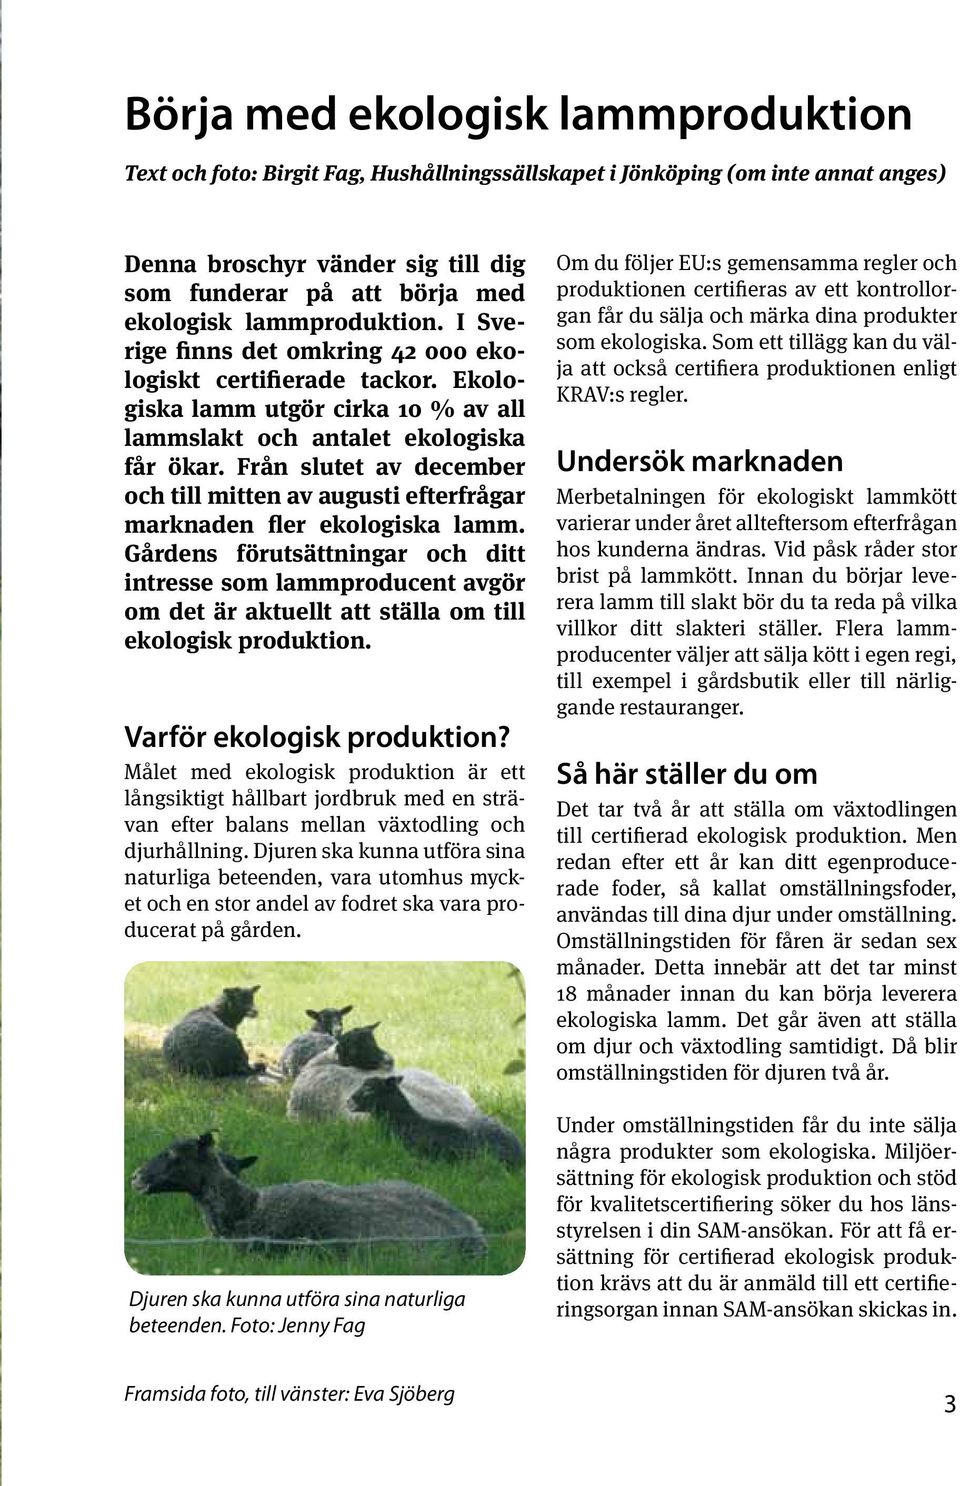 Från slutet av december och till mitten av augusti efterfrågar marknaden fler ekologiska lamm.